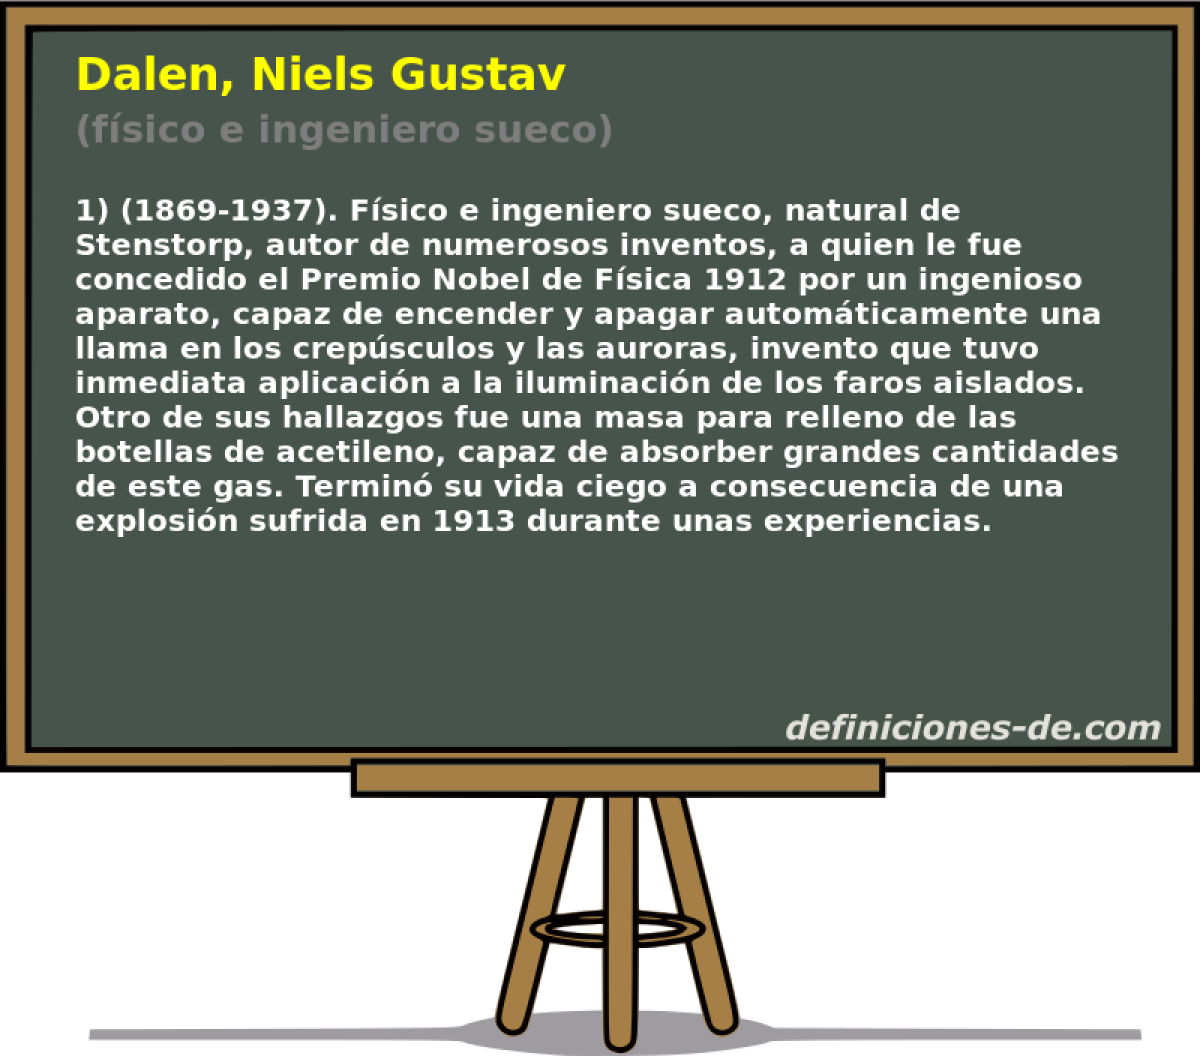 Dalen, Niels Gustav (fsico e ingeniero sueco)